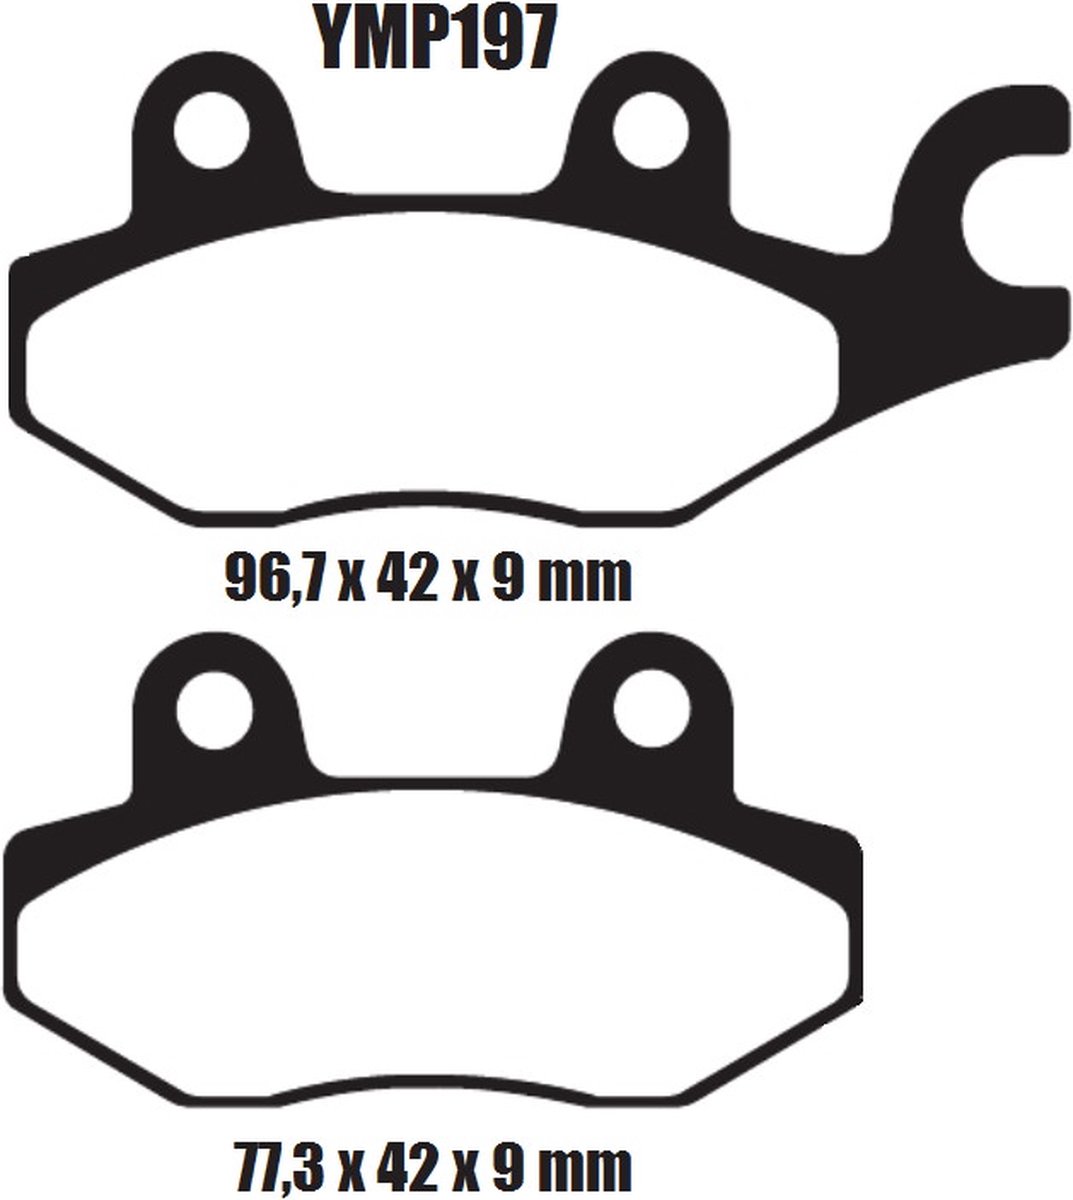 Motor remblokken voorzijde Kreidler 125 / 250 Insignio 2014 - 2015 YMP197 remblok rem voor